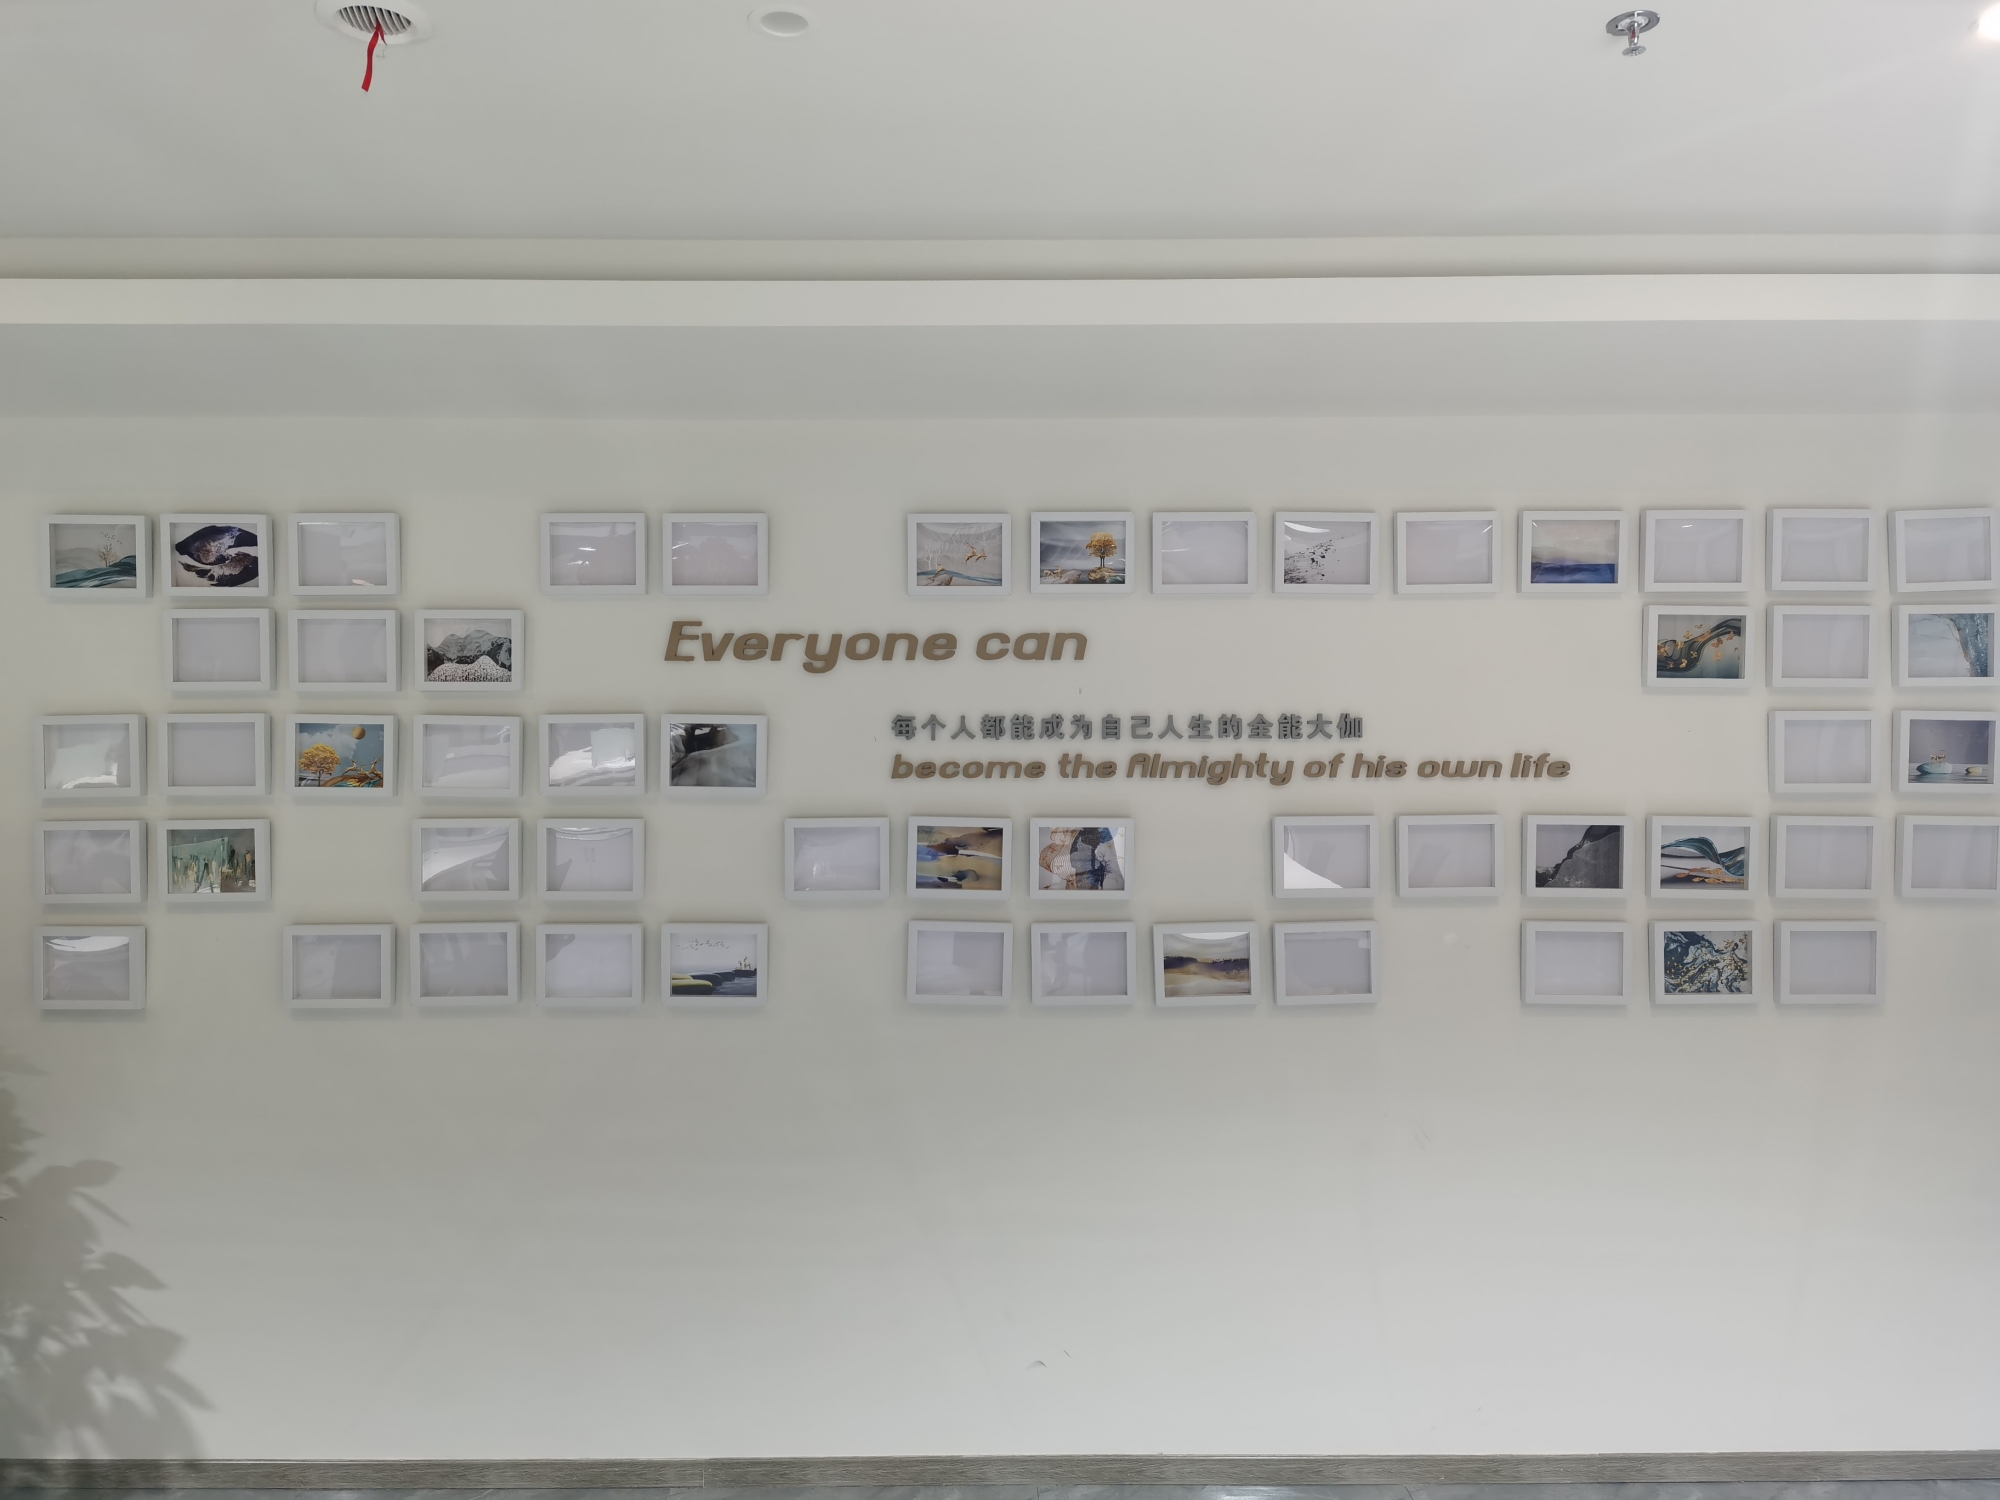 重庆九铉企业管理集团有限公司 环境照片活动图片